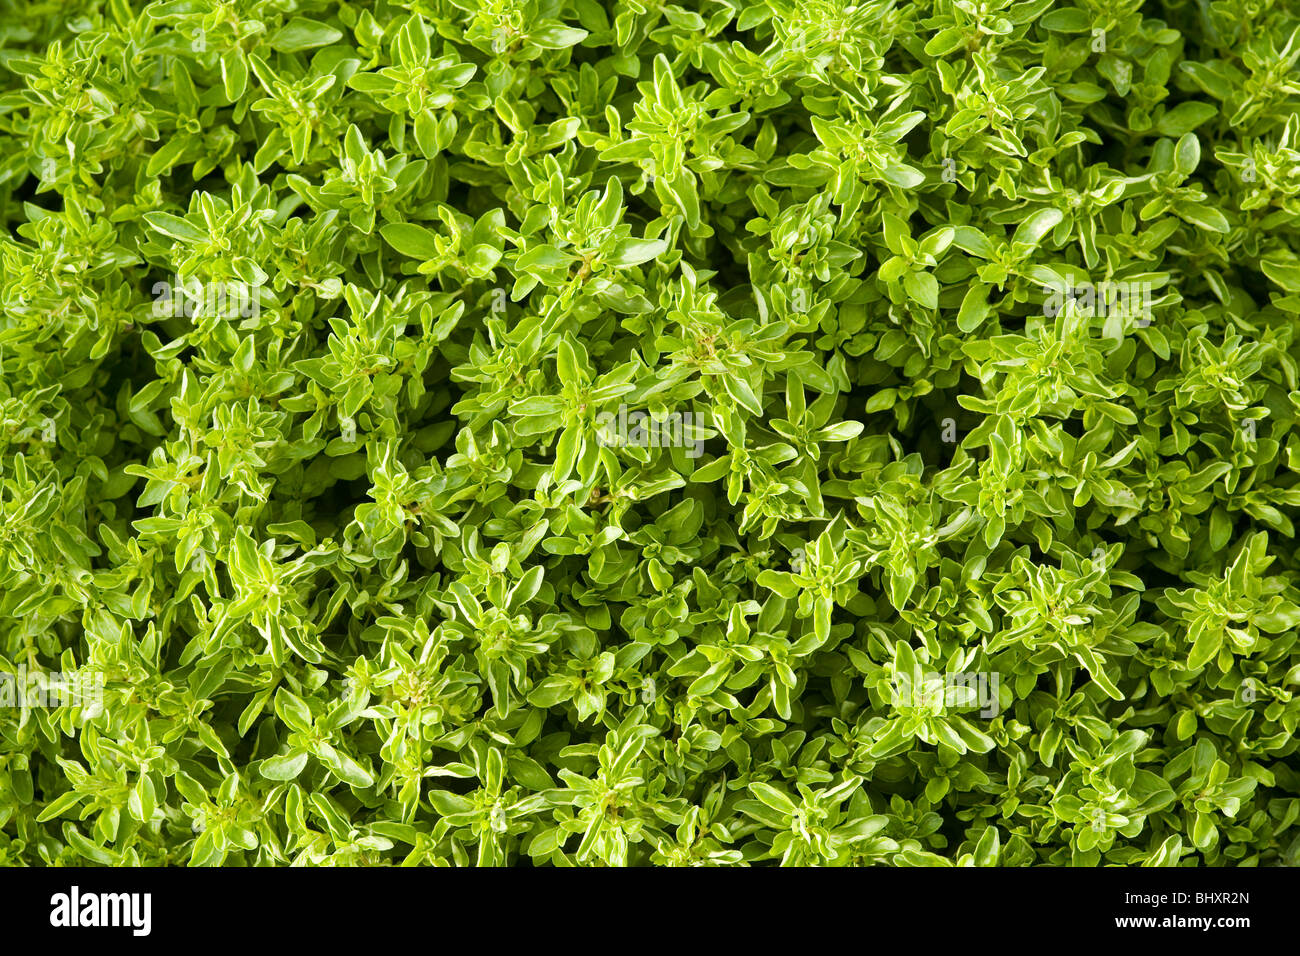 Oregano (Origanum vulgare var.compactum) Stock Photo